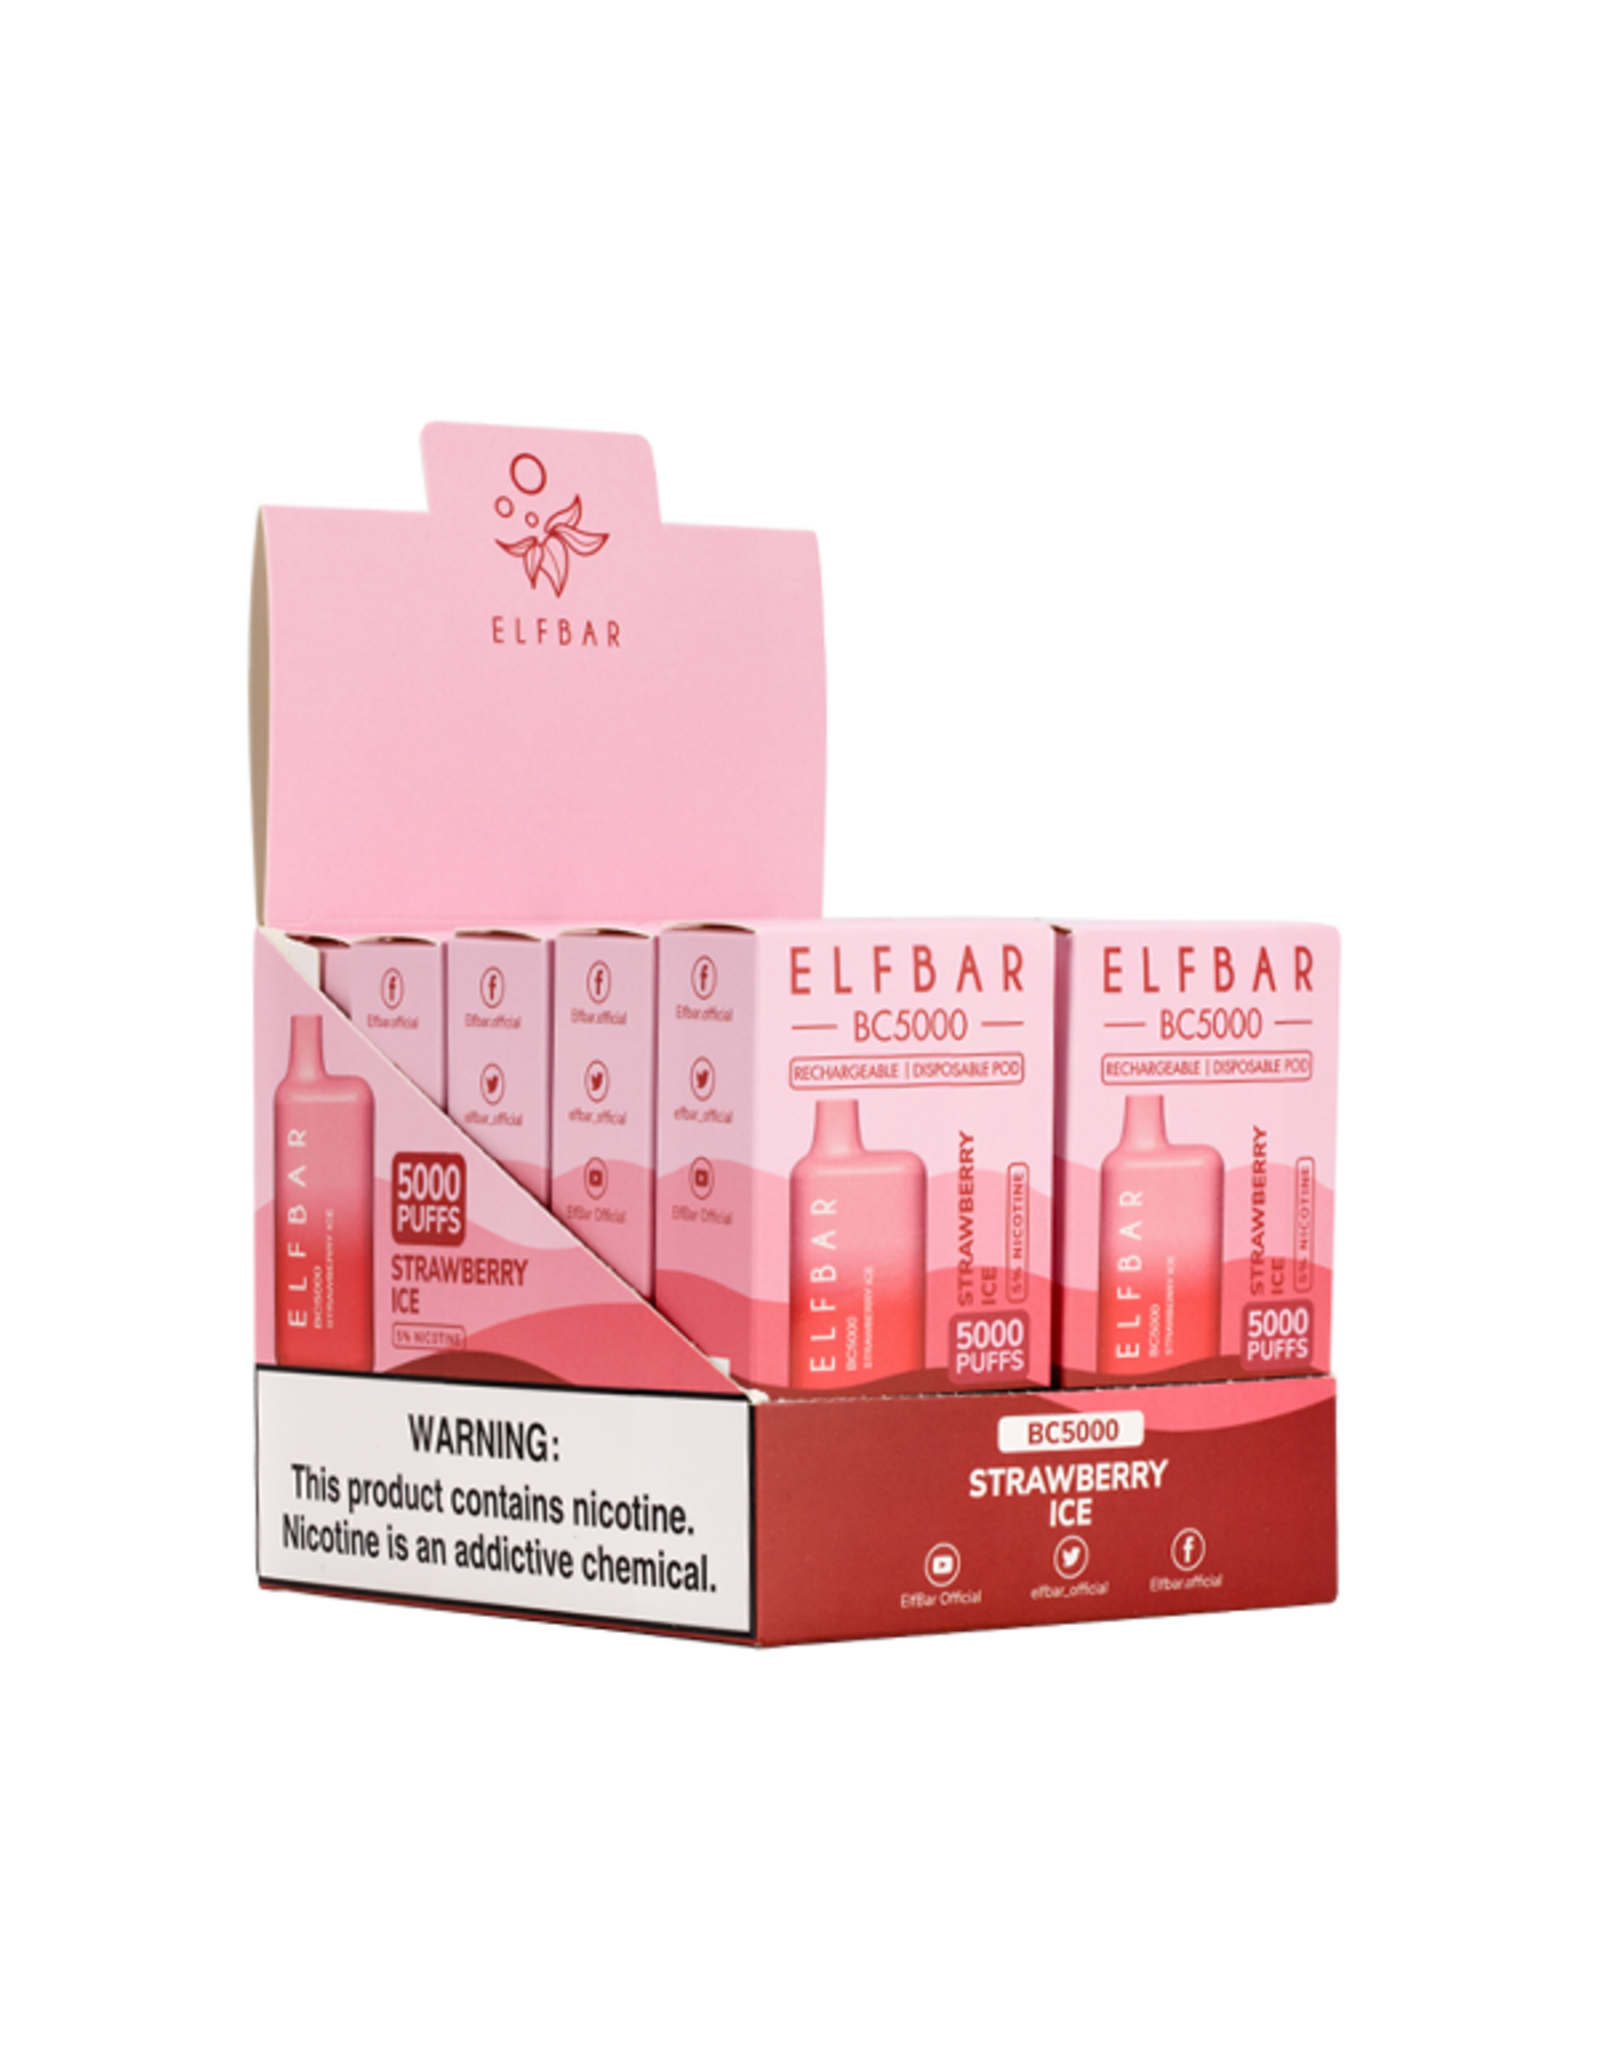 ELFBAR ELFBAR Strawberry Ice 5000 Puffs 5% Box